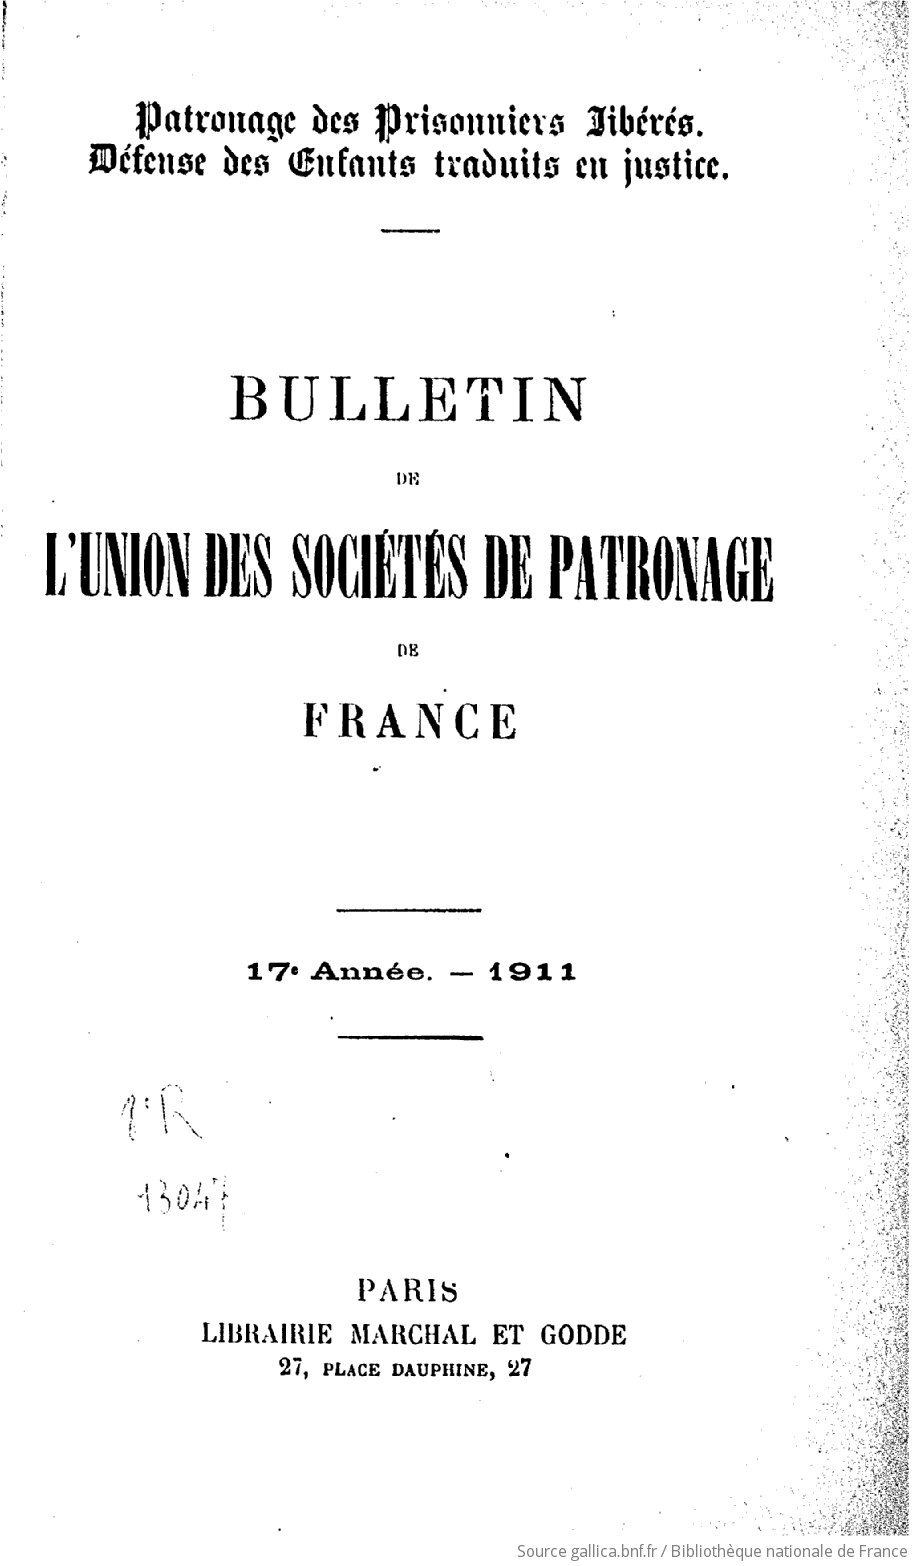 Bulletin de l'Union des sociétés de patronage de France